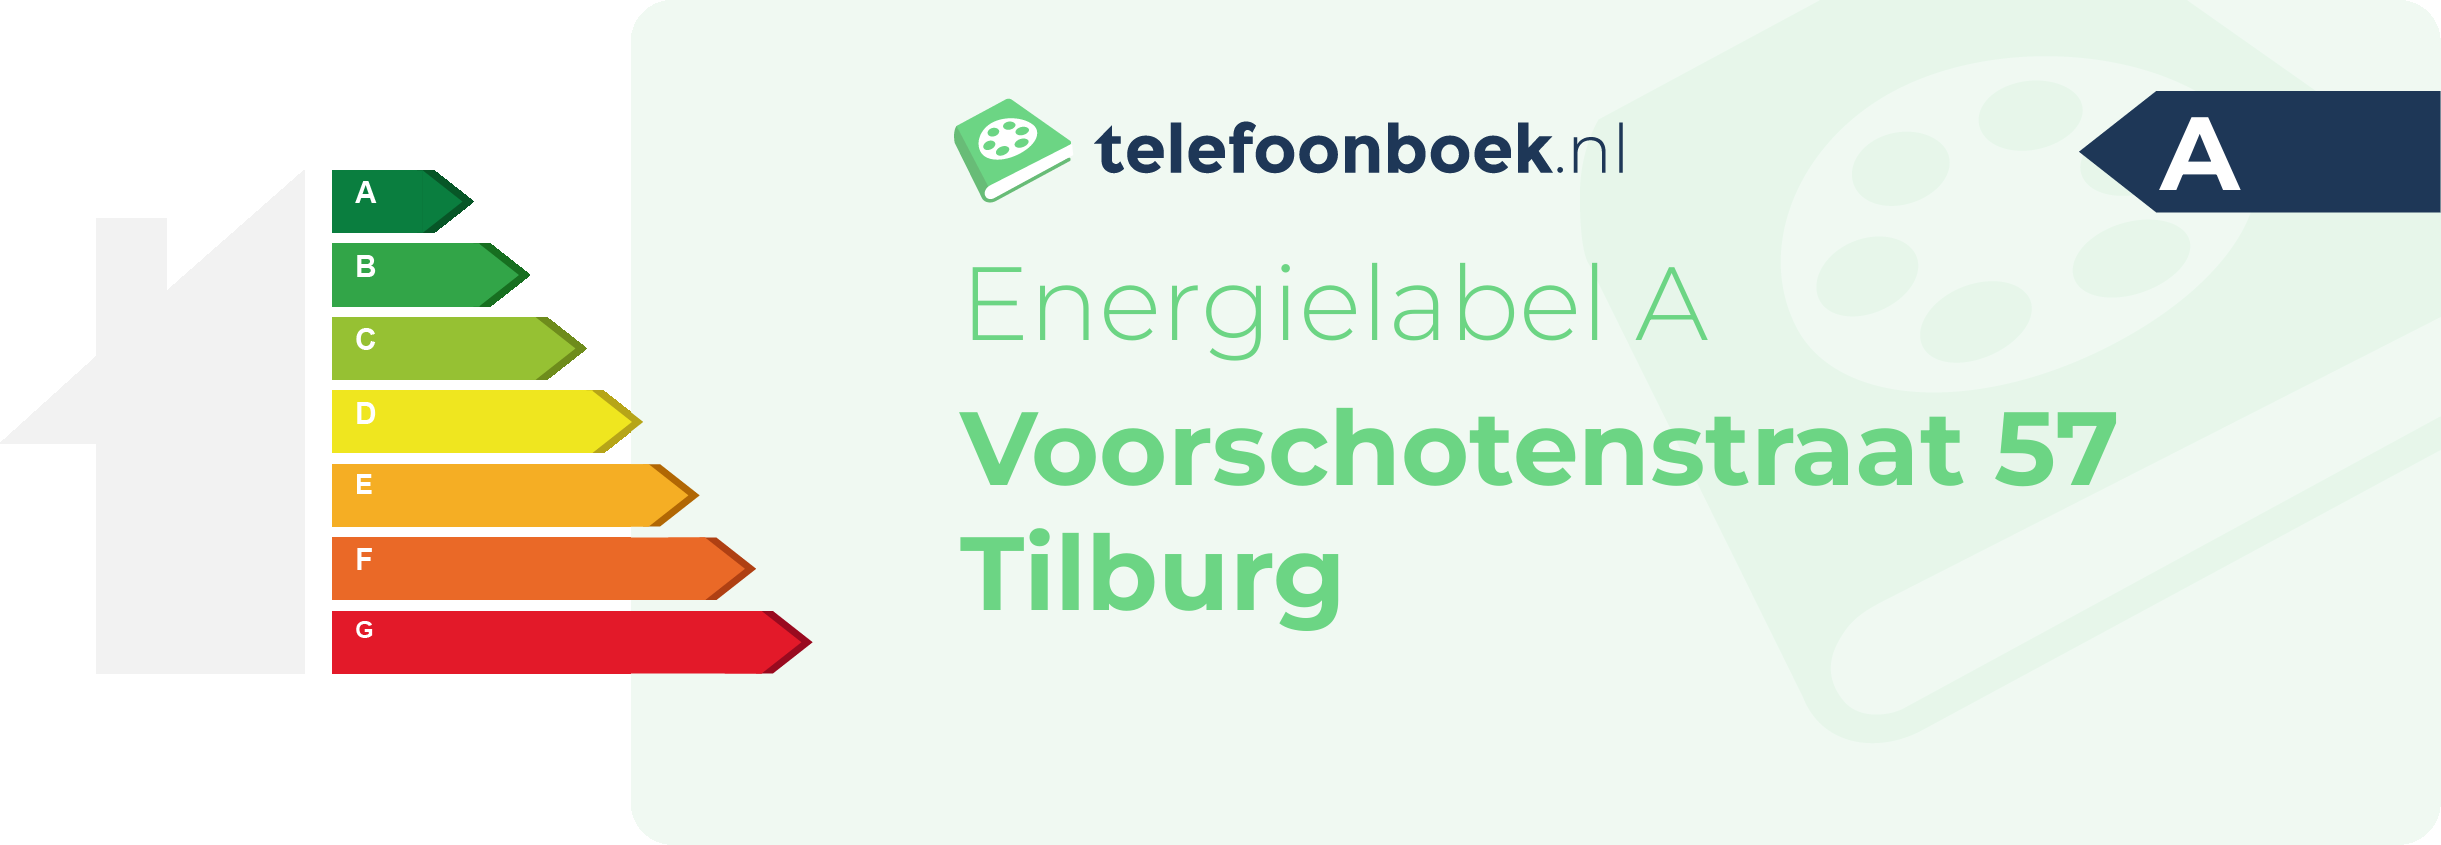 Energielabel Voorschotenstraat 57 Tilburg